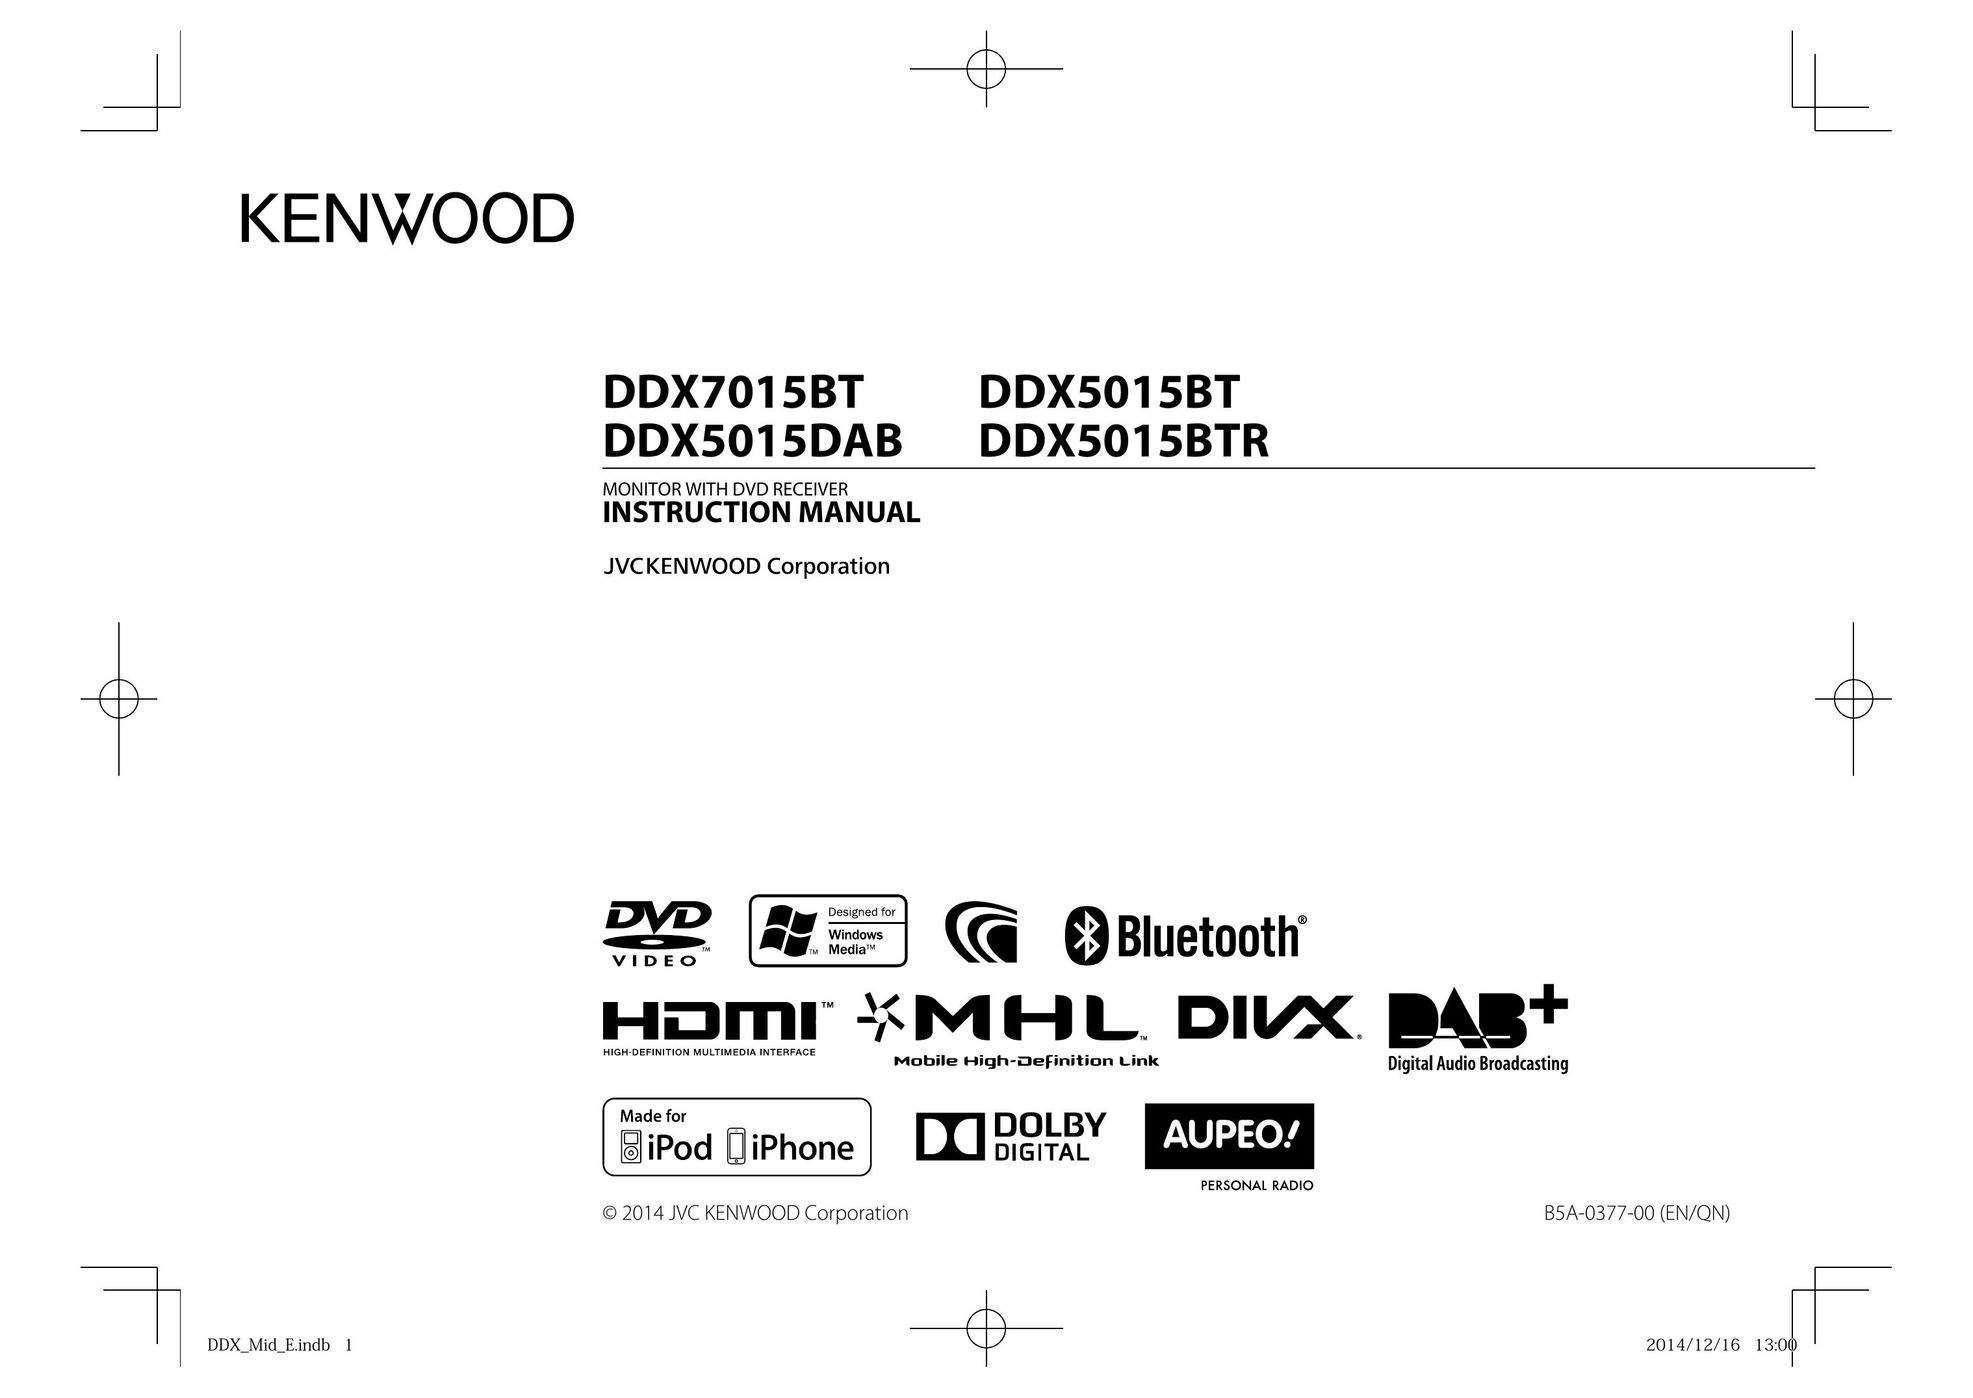 Kenwood DDX5015BT Car Video System User Manual